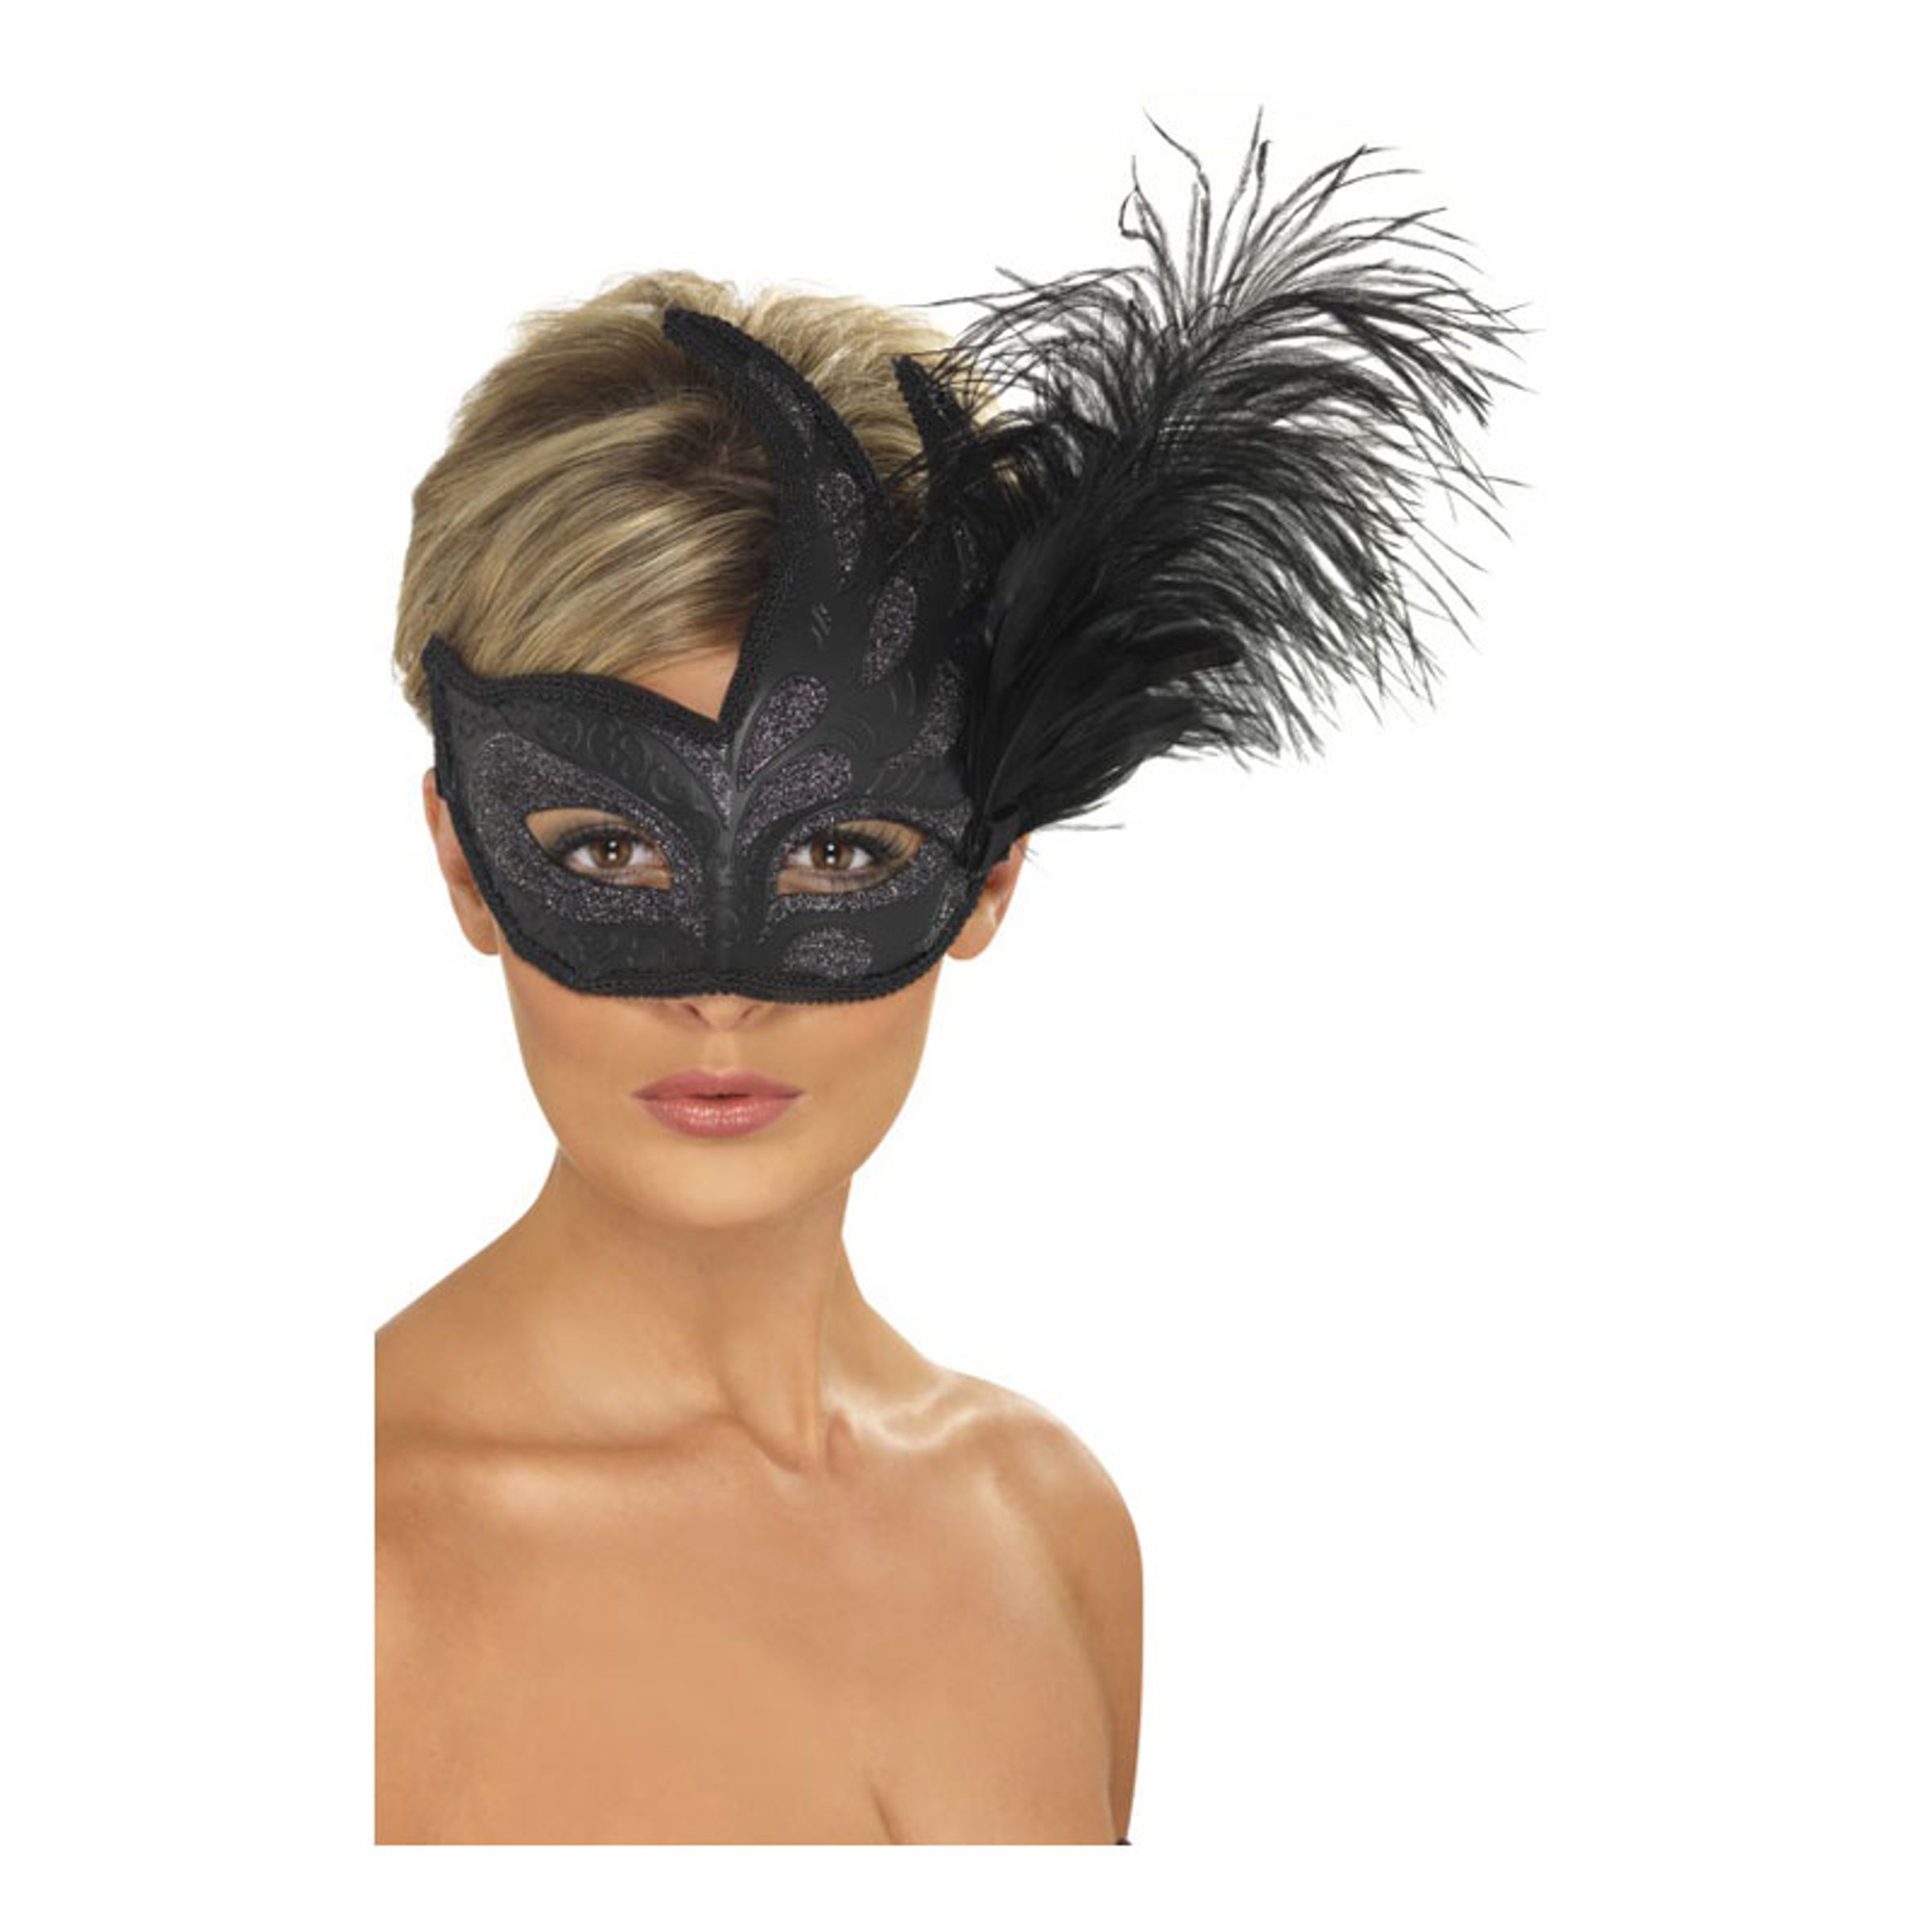 Colombina Svart Ögonmask - One size